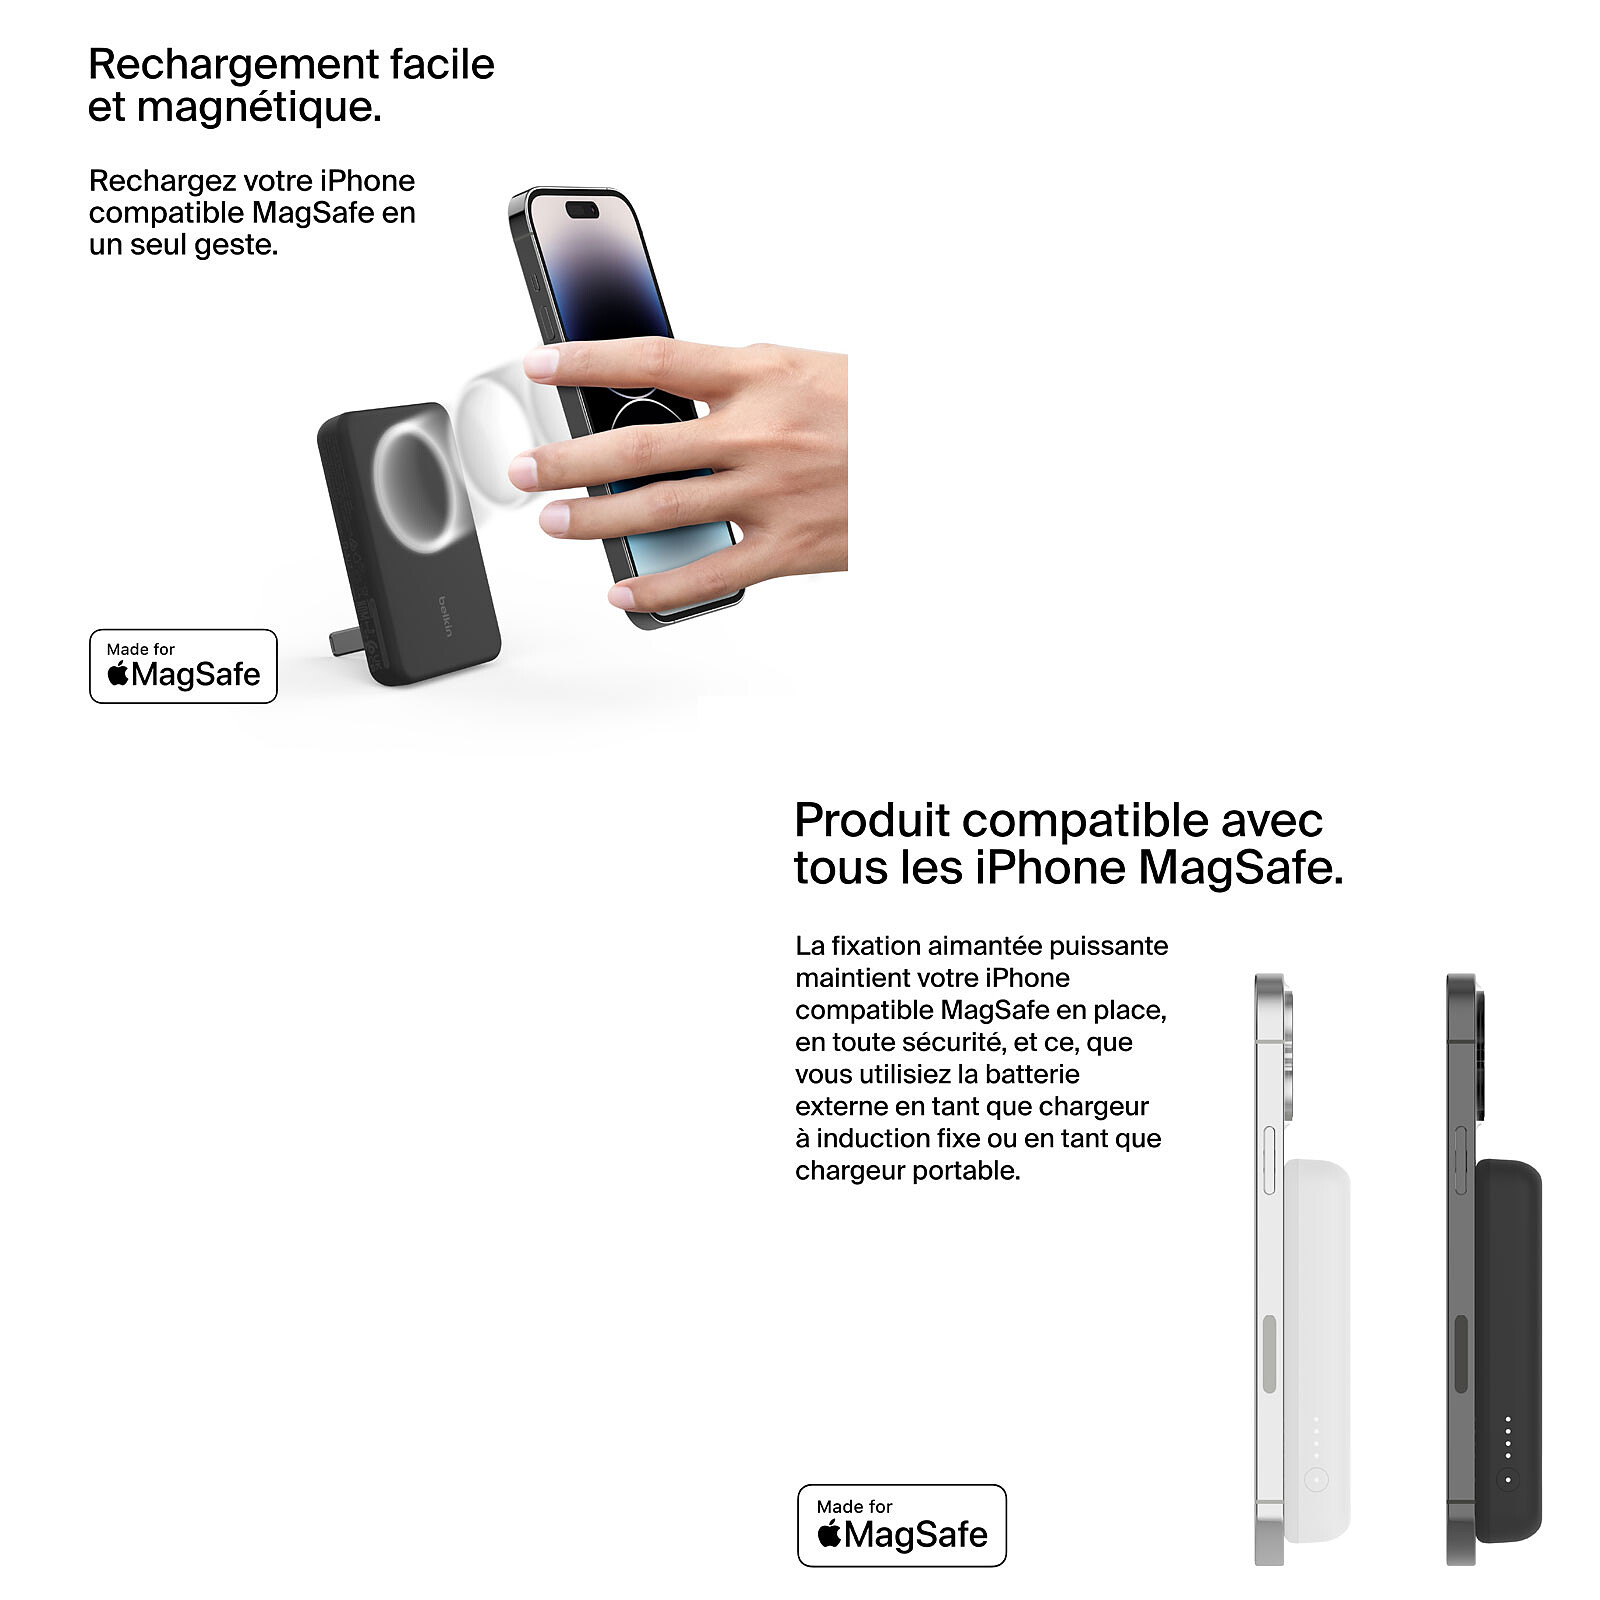 Chargeurs et batteries externes MagSafe pour l'iPhone - Assistance